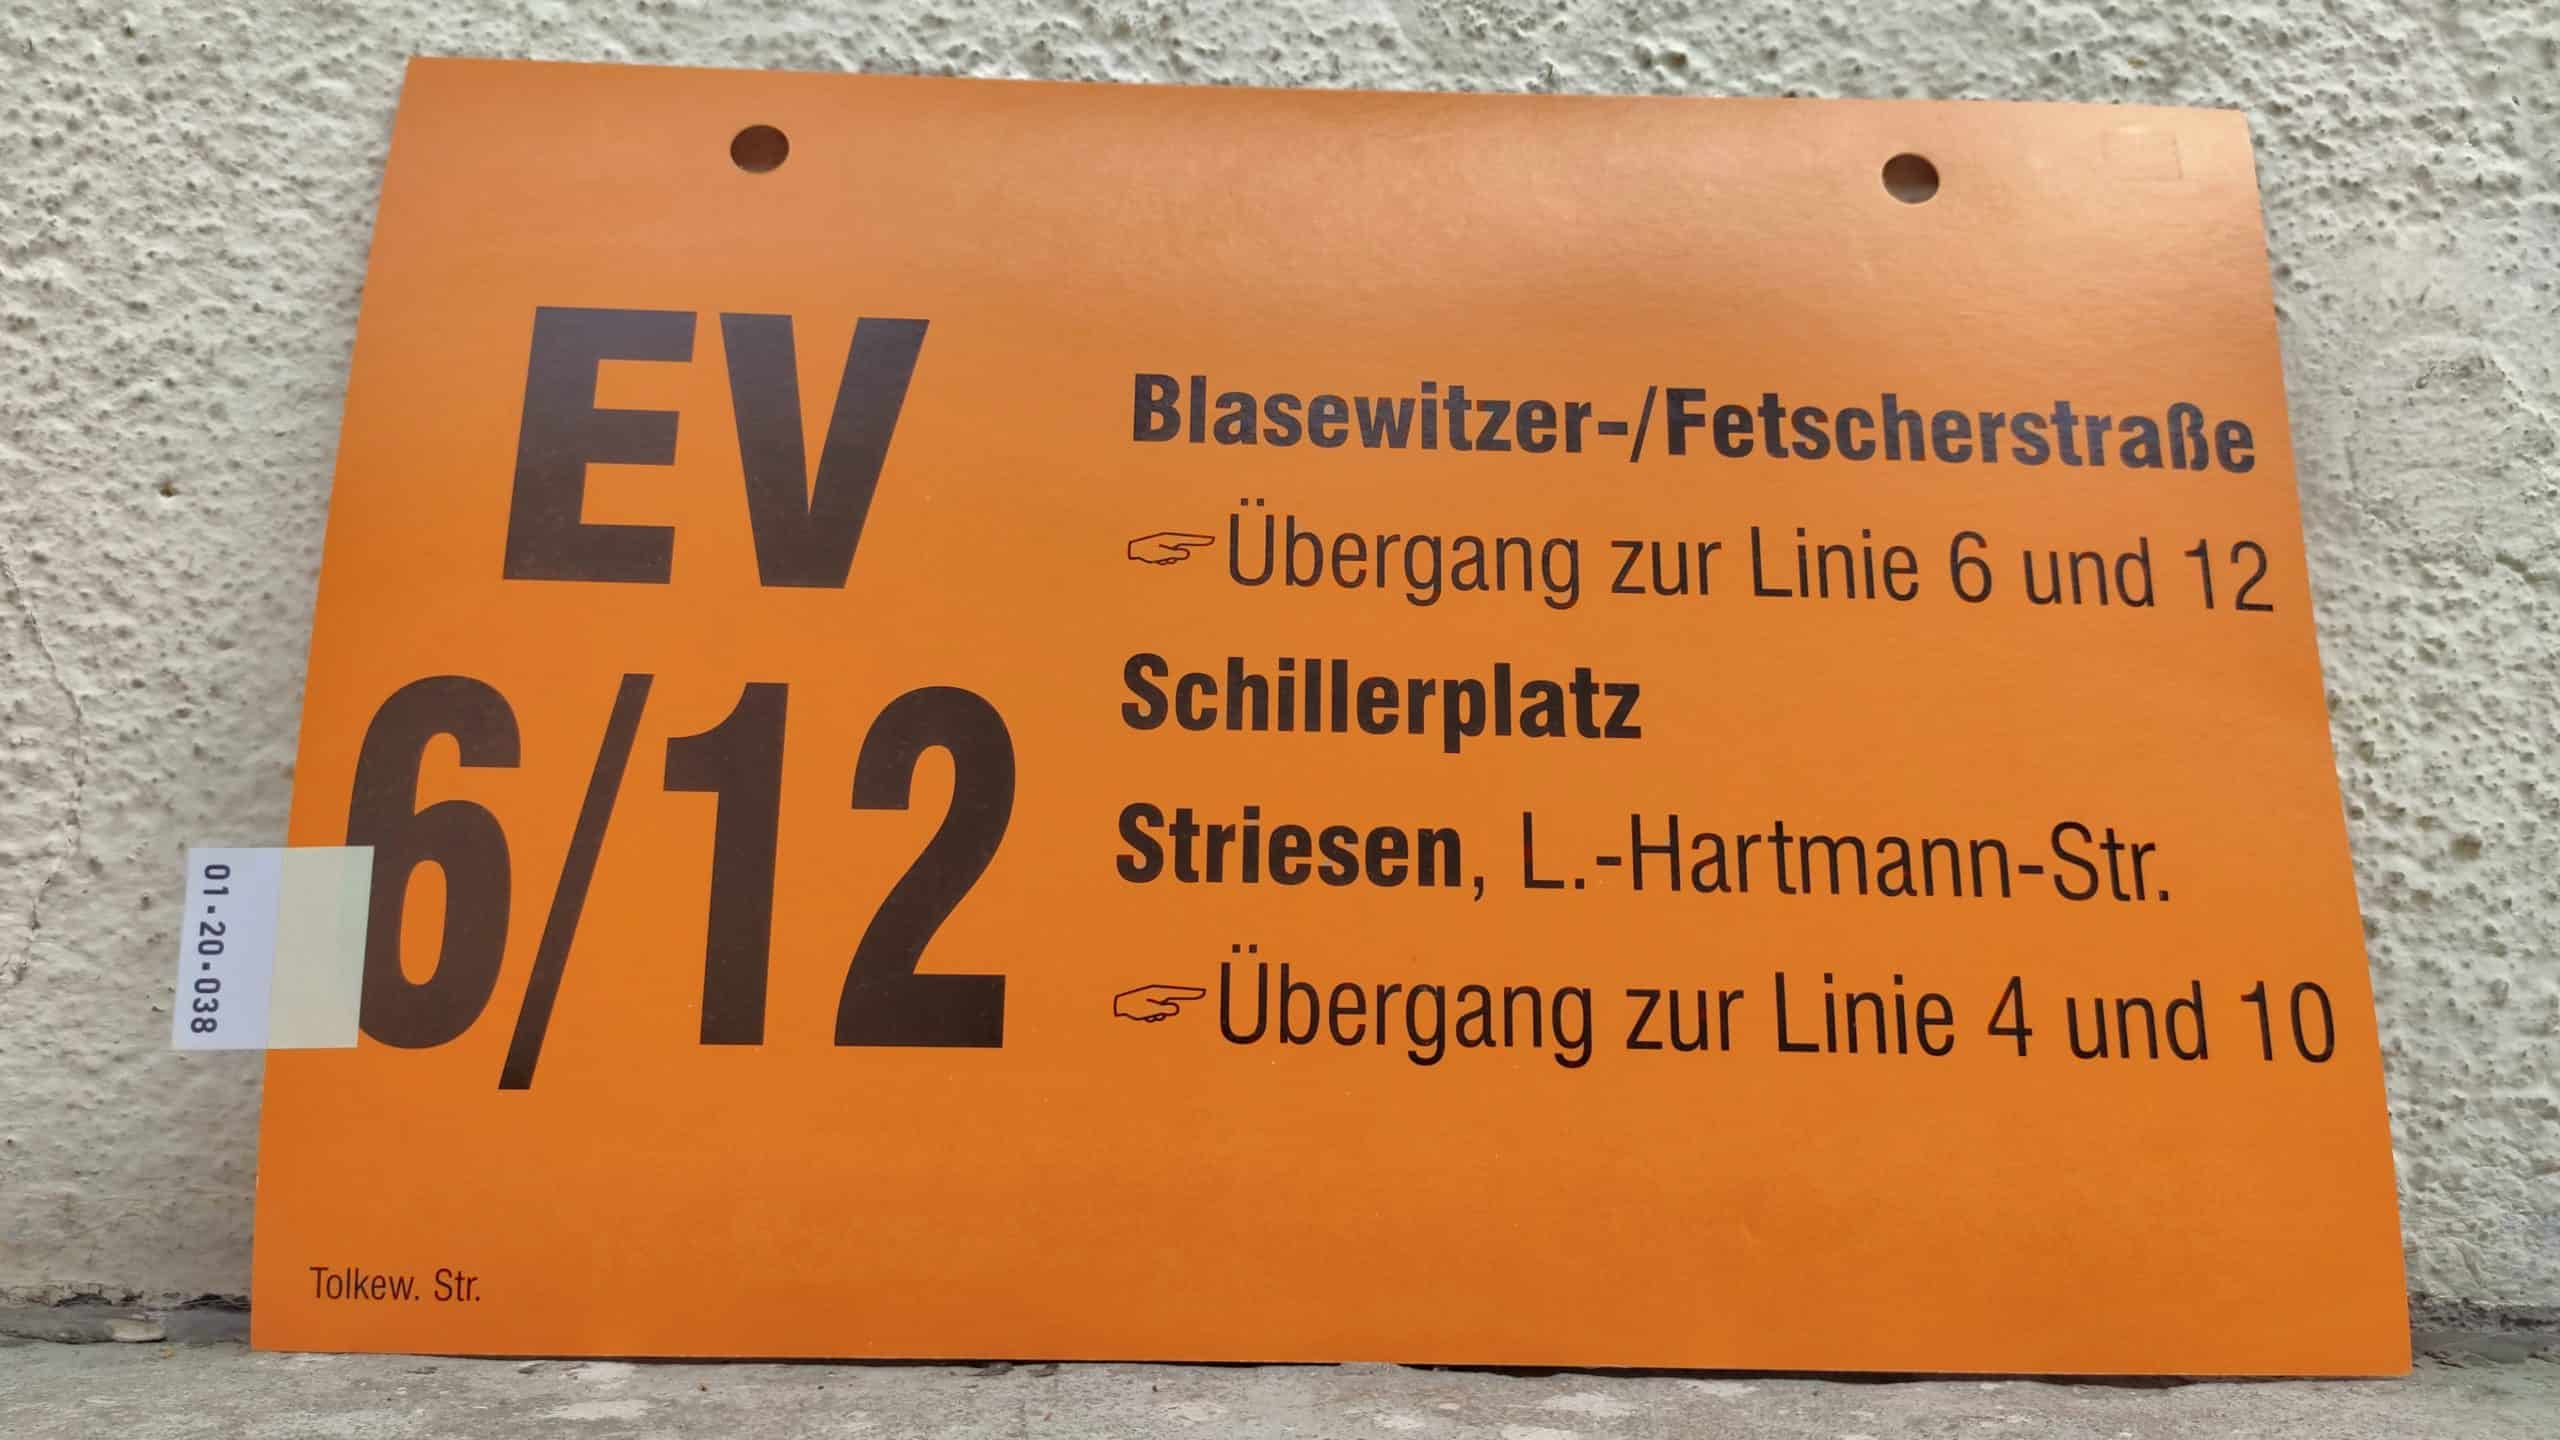 EV 6/12 Blasewitzer-/Fetscherstraße [Zeigefinger]Übergang zur Linie 6 und 12 – Striesen, L.-Hartmann-Str. [Zeigefinger]Übergang zur Linie 4 und 10